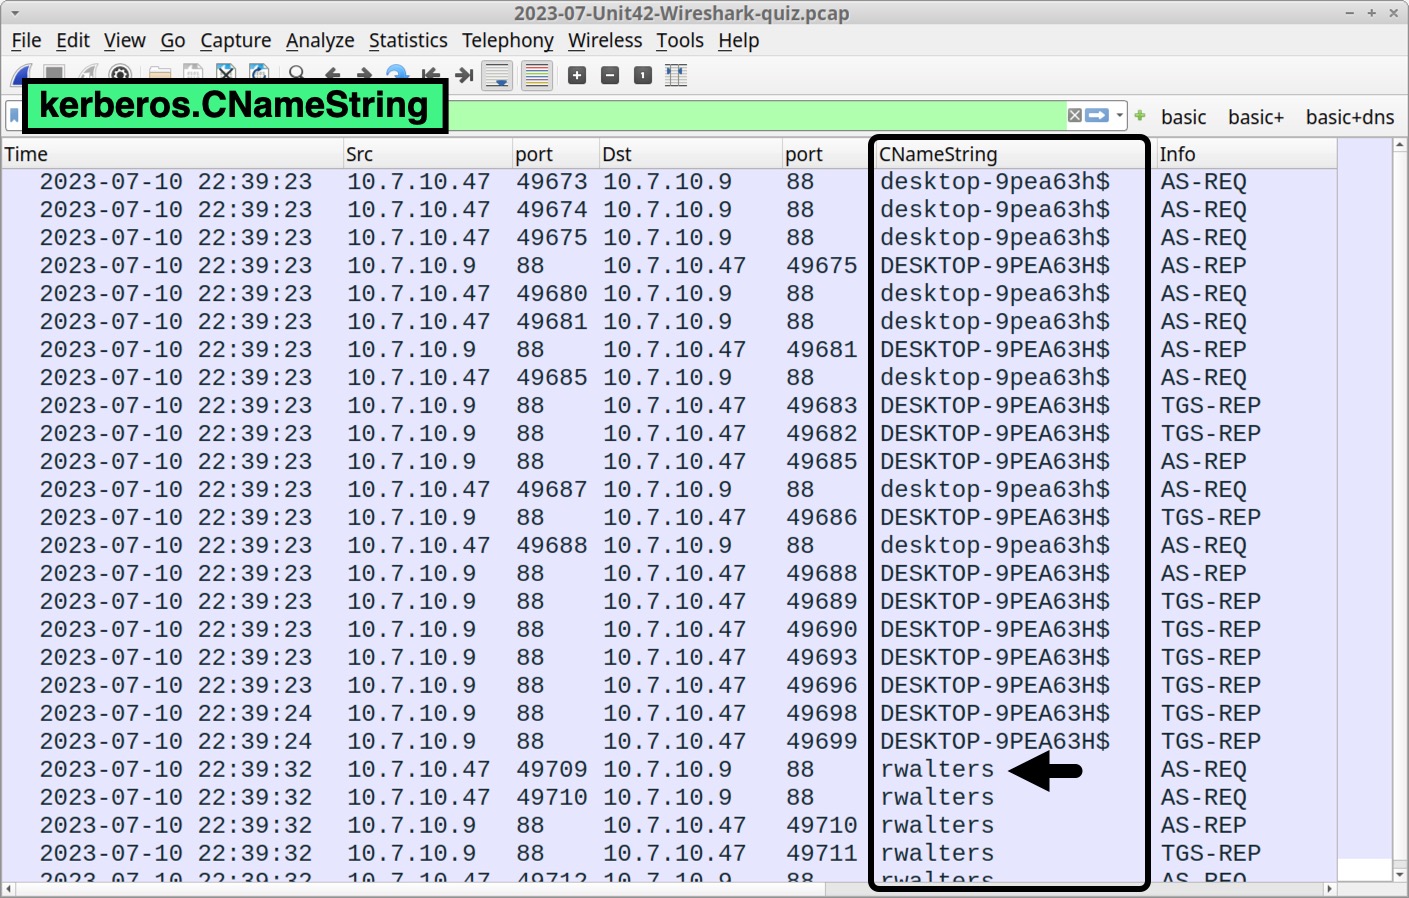 画像 3 は Wireshark のスクリーンショットです。緑色の四角でフィルターが「kerberos.CNameString」に設定されていることを示しています。黒い四角は「CNameString」列をハイライトしています。黒い矢印が、同列の下部にある「rwalters」を指しています。